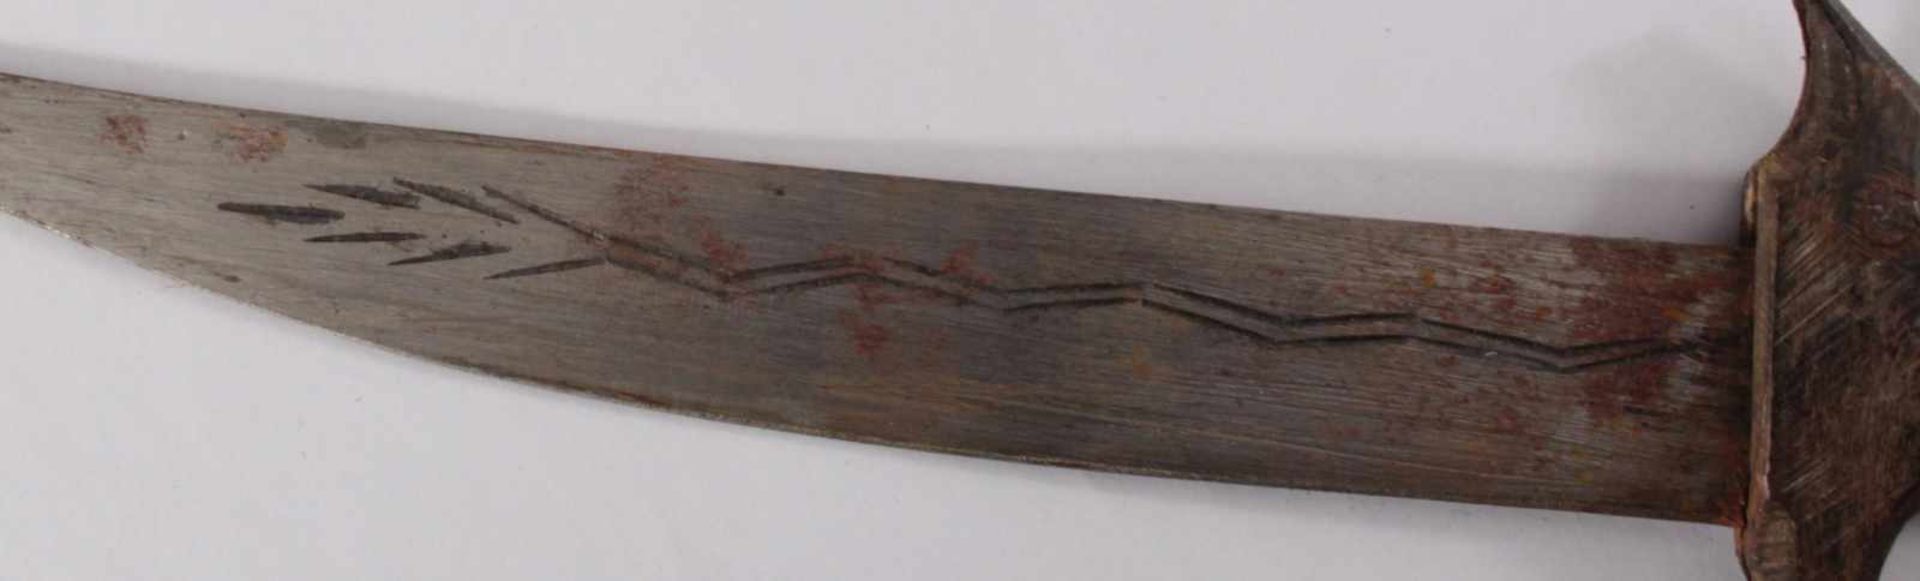 Antikes MesserGravierte Stahlklinge, Griff aus geschnitztem Holz und Bein, Holzscheide, ummantelt - Bild 5 aus 7